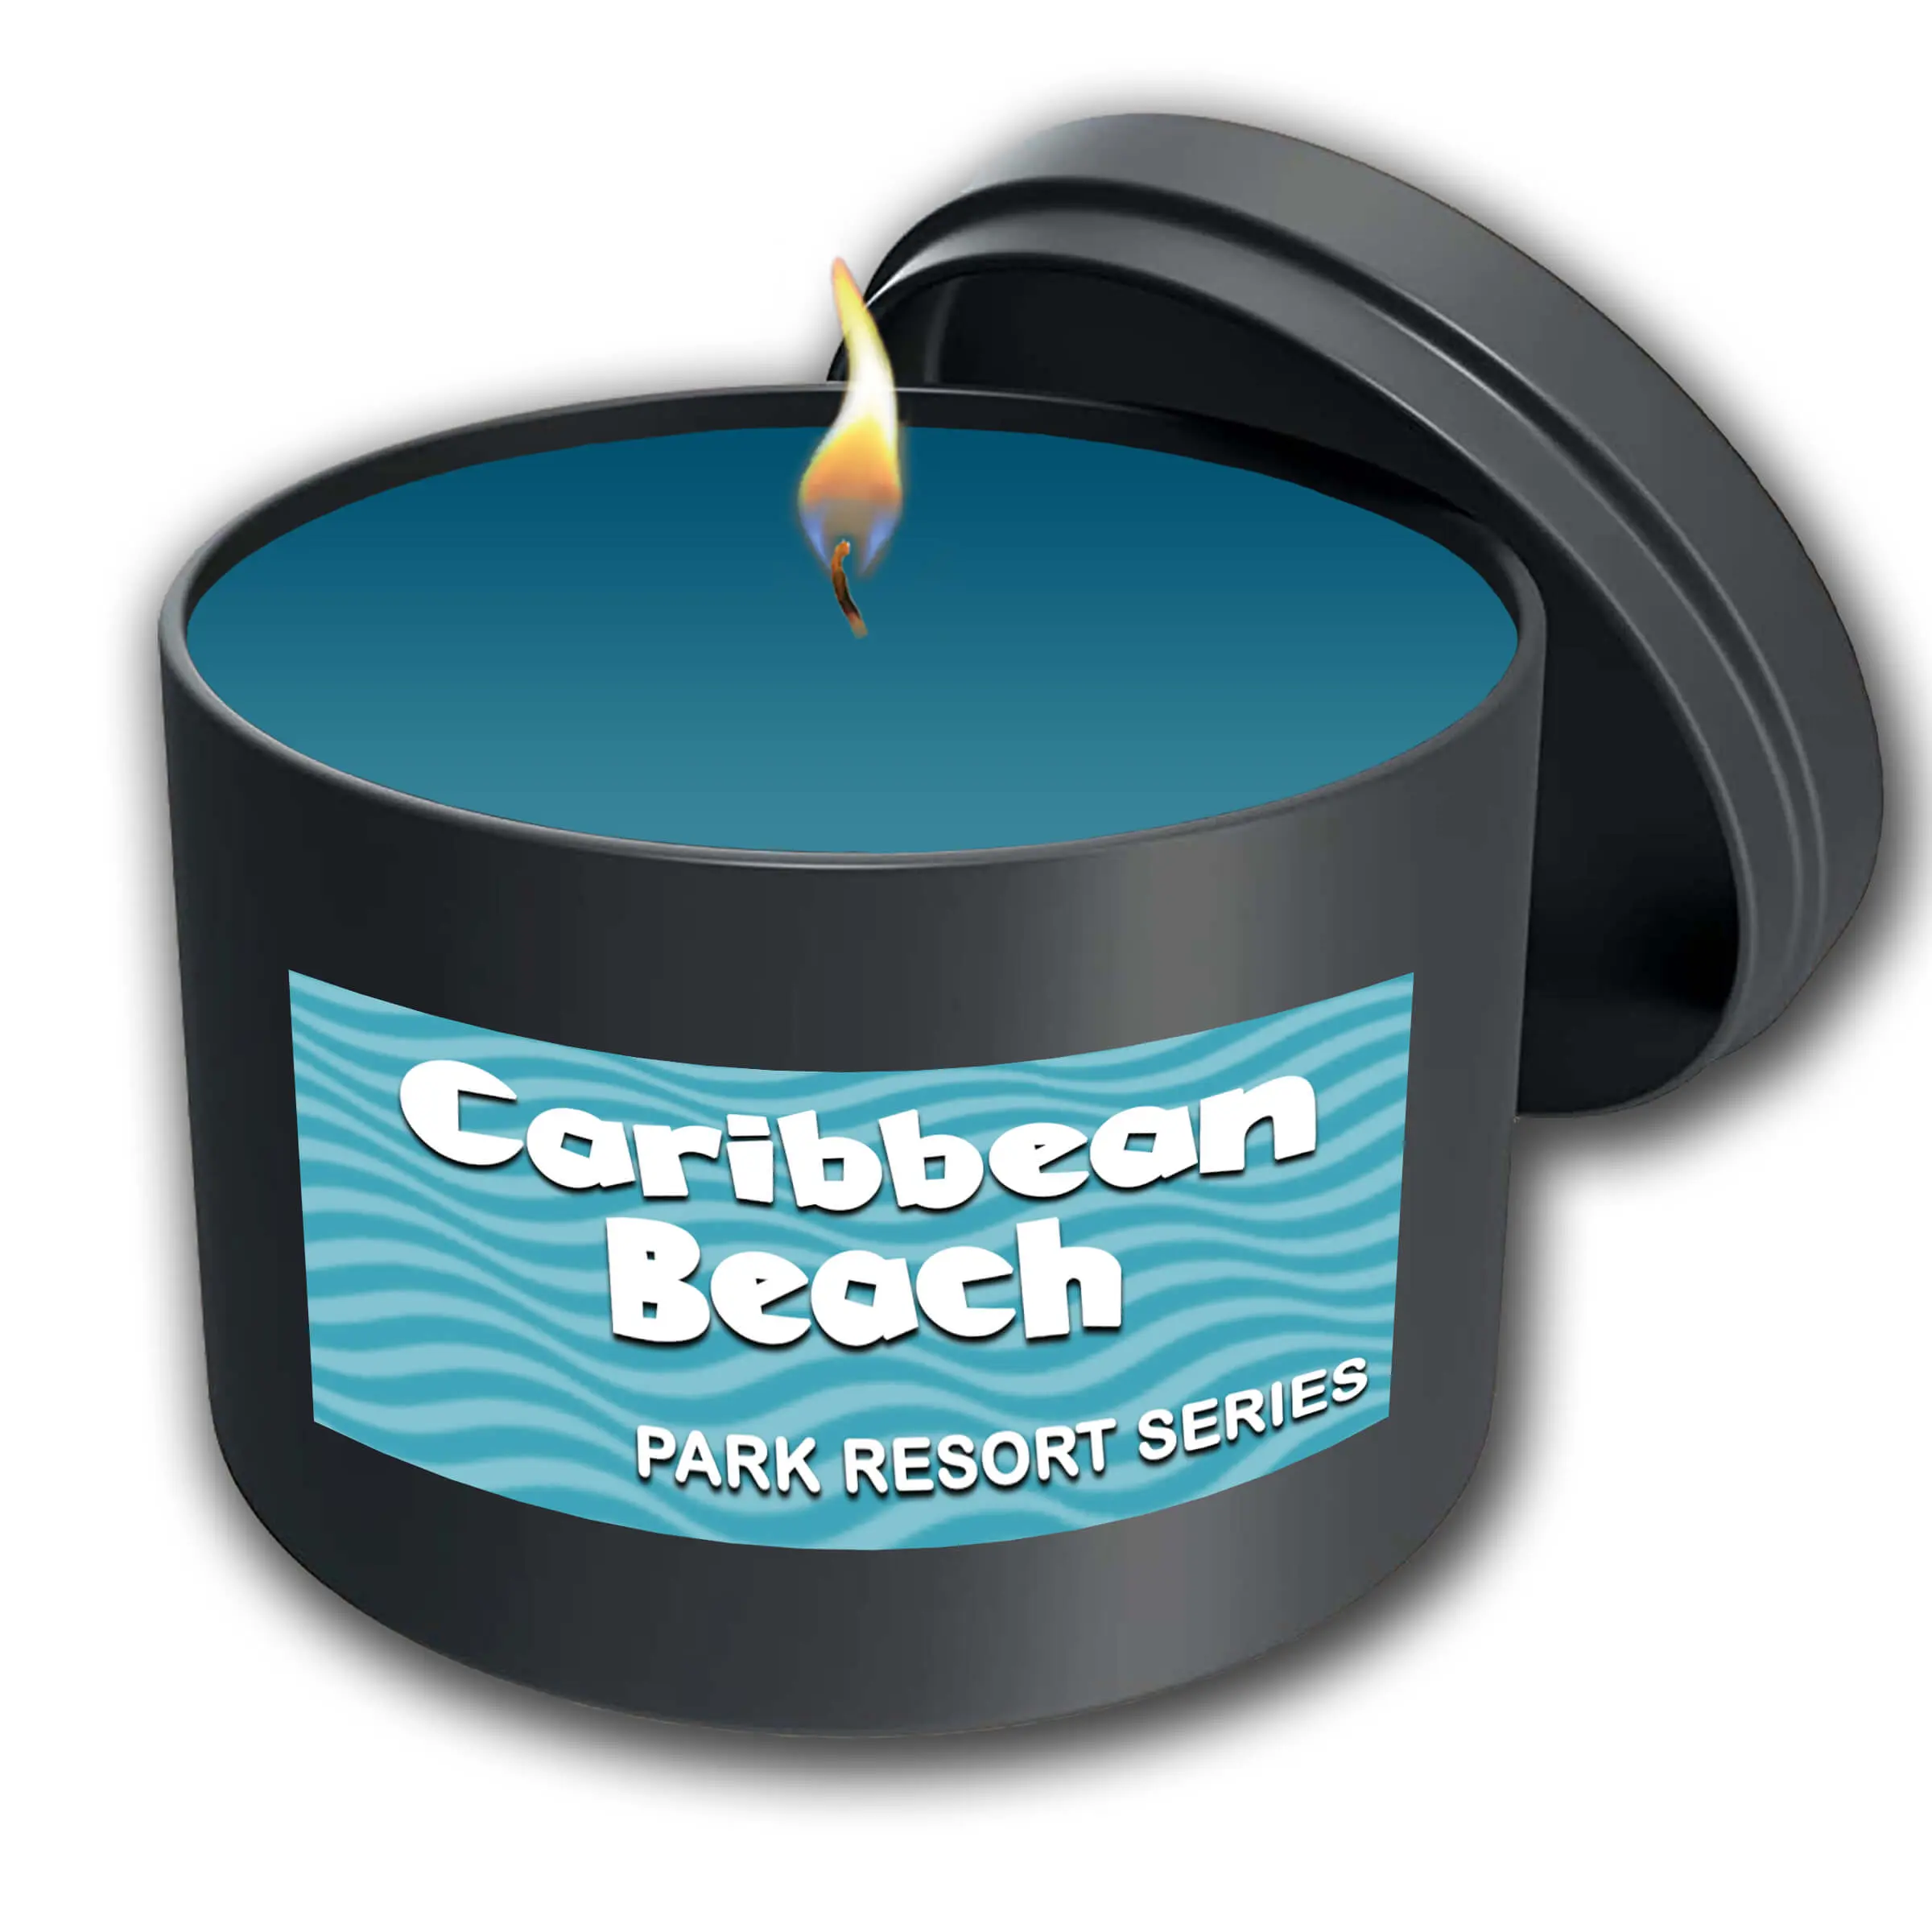 Caribbean Beach Resort - Park Resort Series